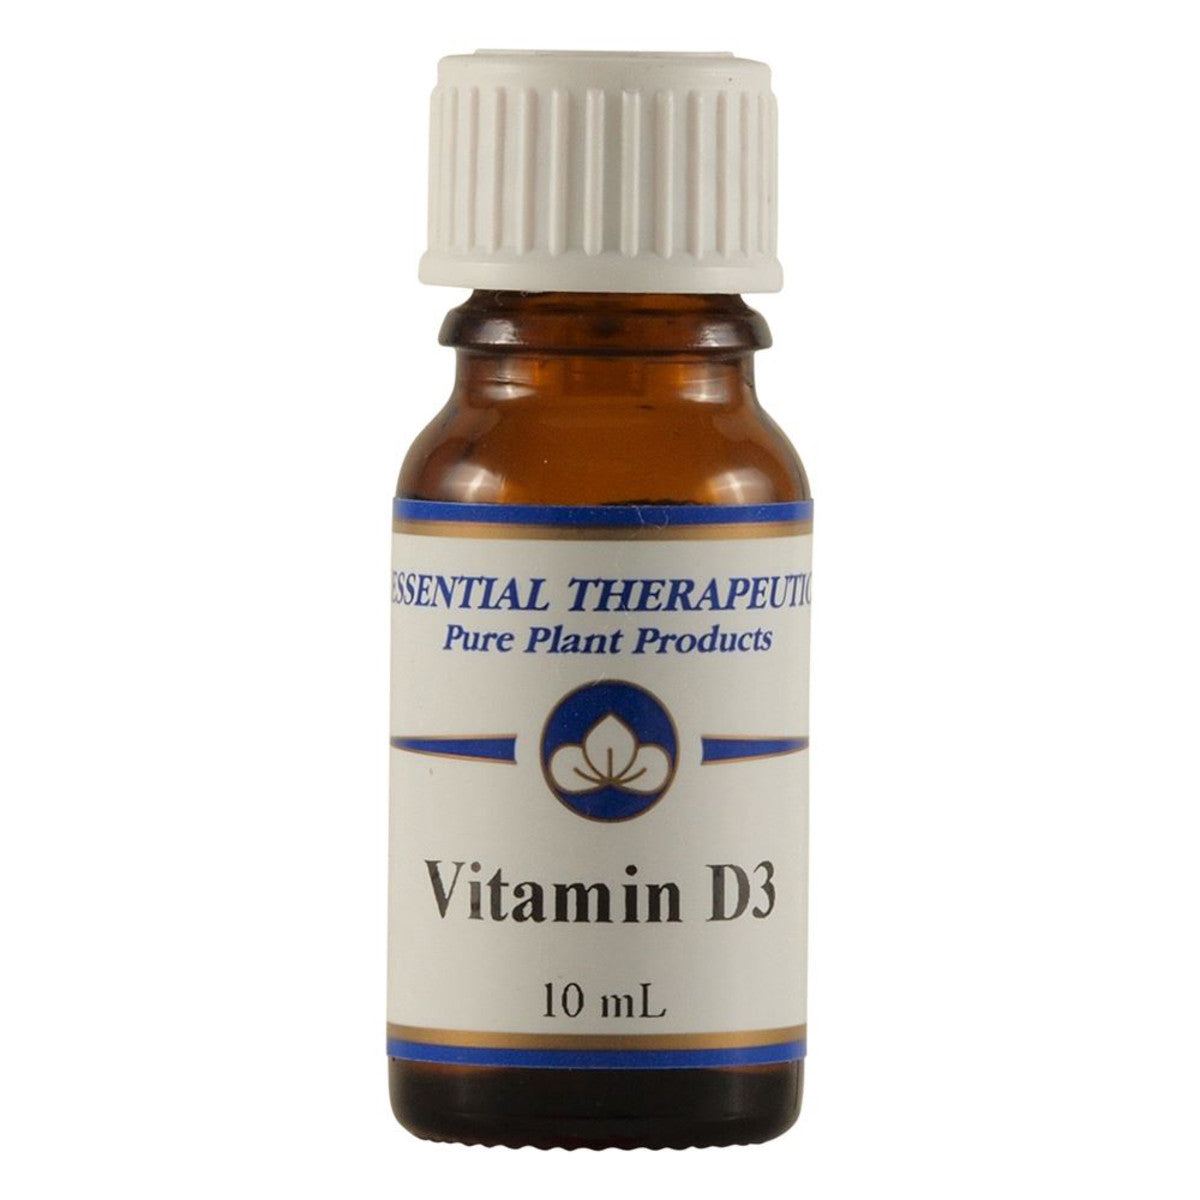 Essential Therapeutics - Vitamin D3 10ml